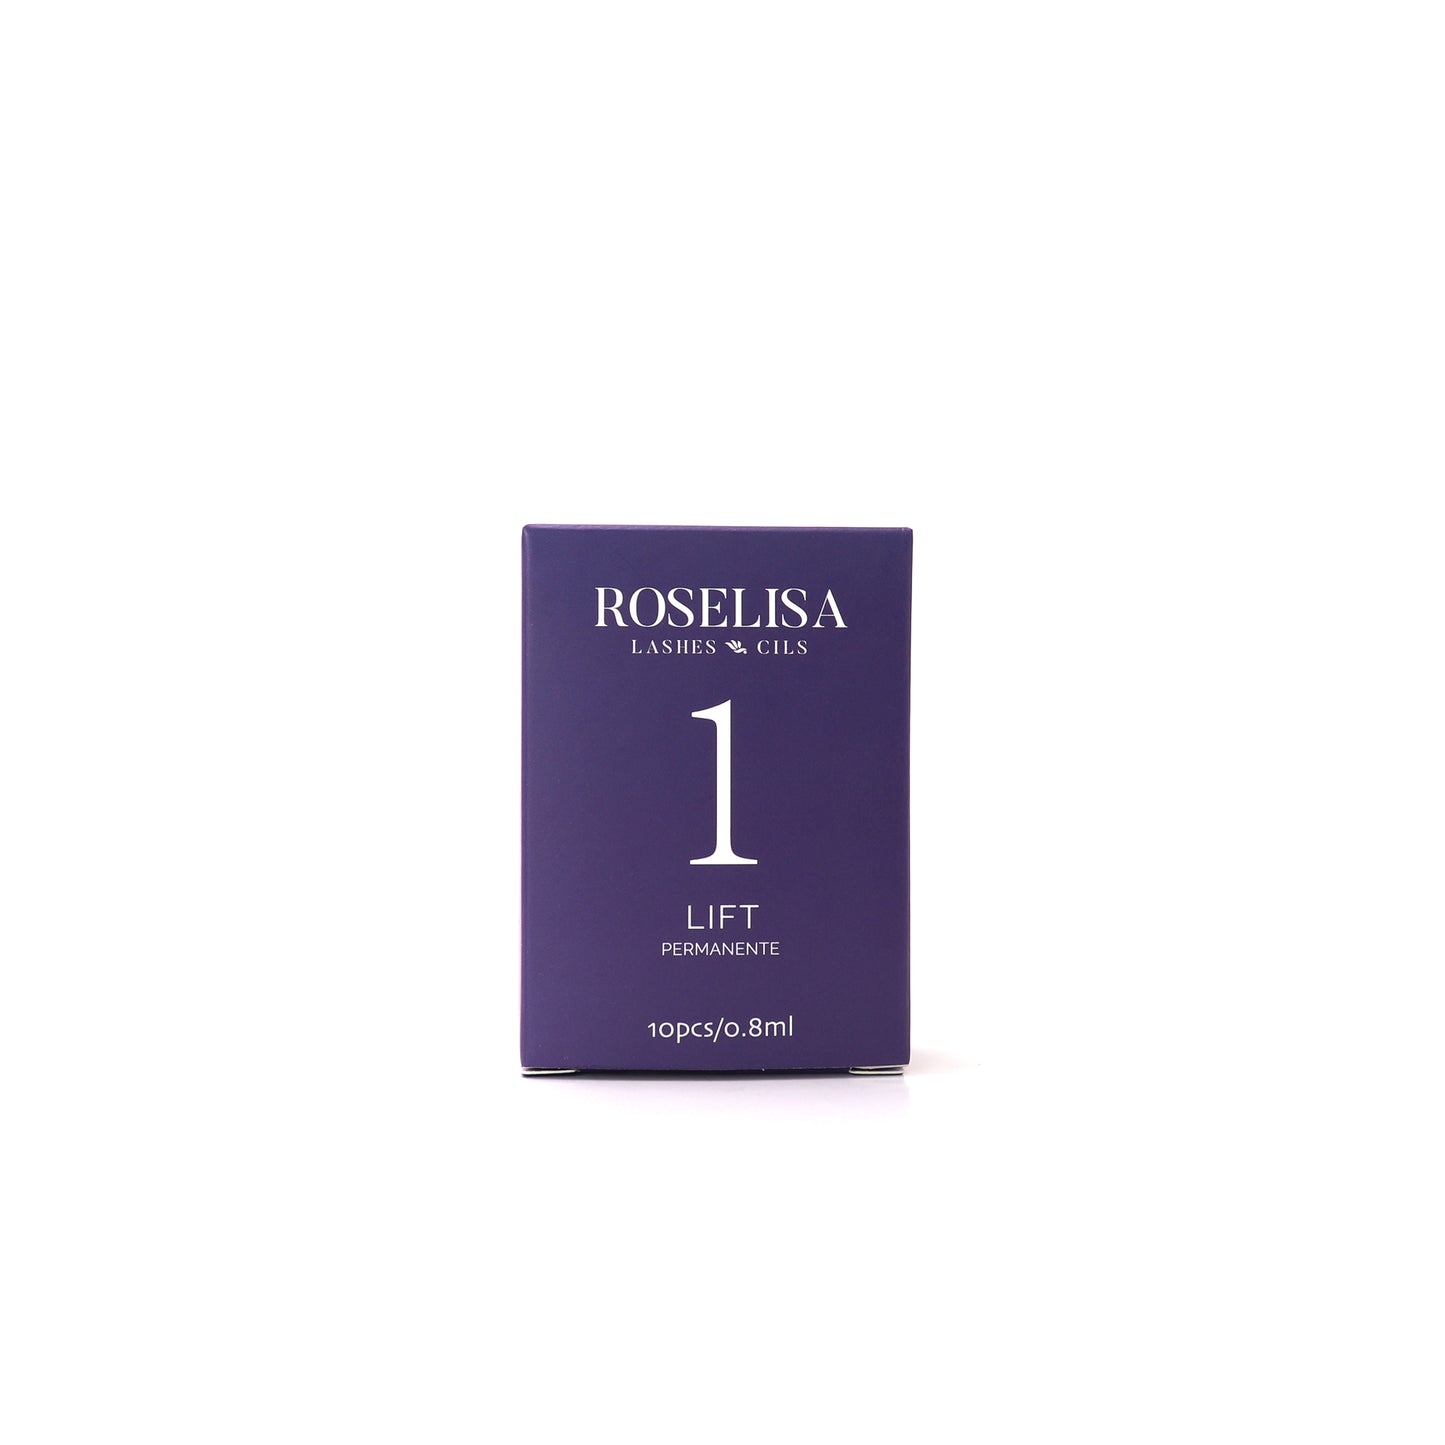 Solution #1 - LIFT de la marque Roselisa. Cette lotion est la première étape du système LIFT qui décomposera la forme des cheveux, leur permettant de prendre leur nouvelle forme.  (0.8 ml /sachet)